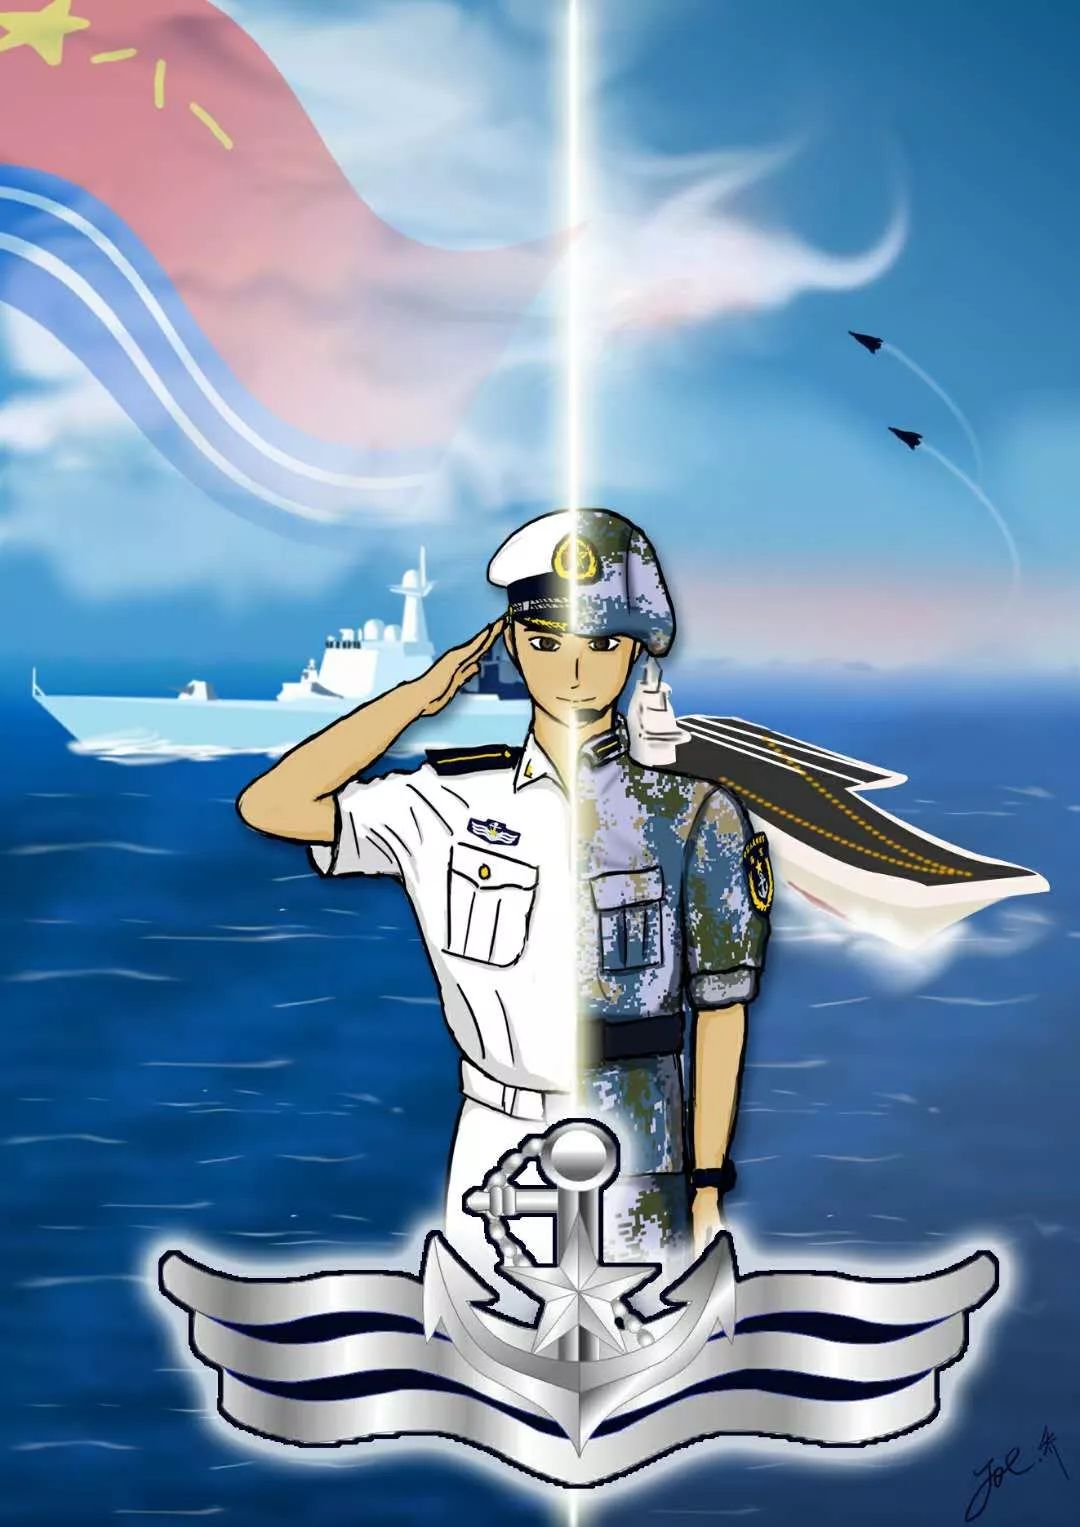 祝福你,中国海军! 诗的尽头,是海的远方. 祝人民海军生日快乐!